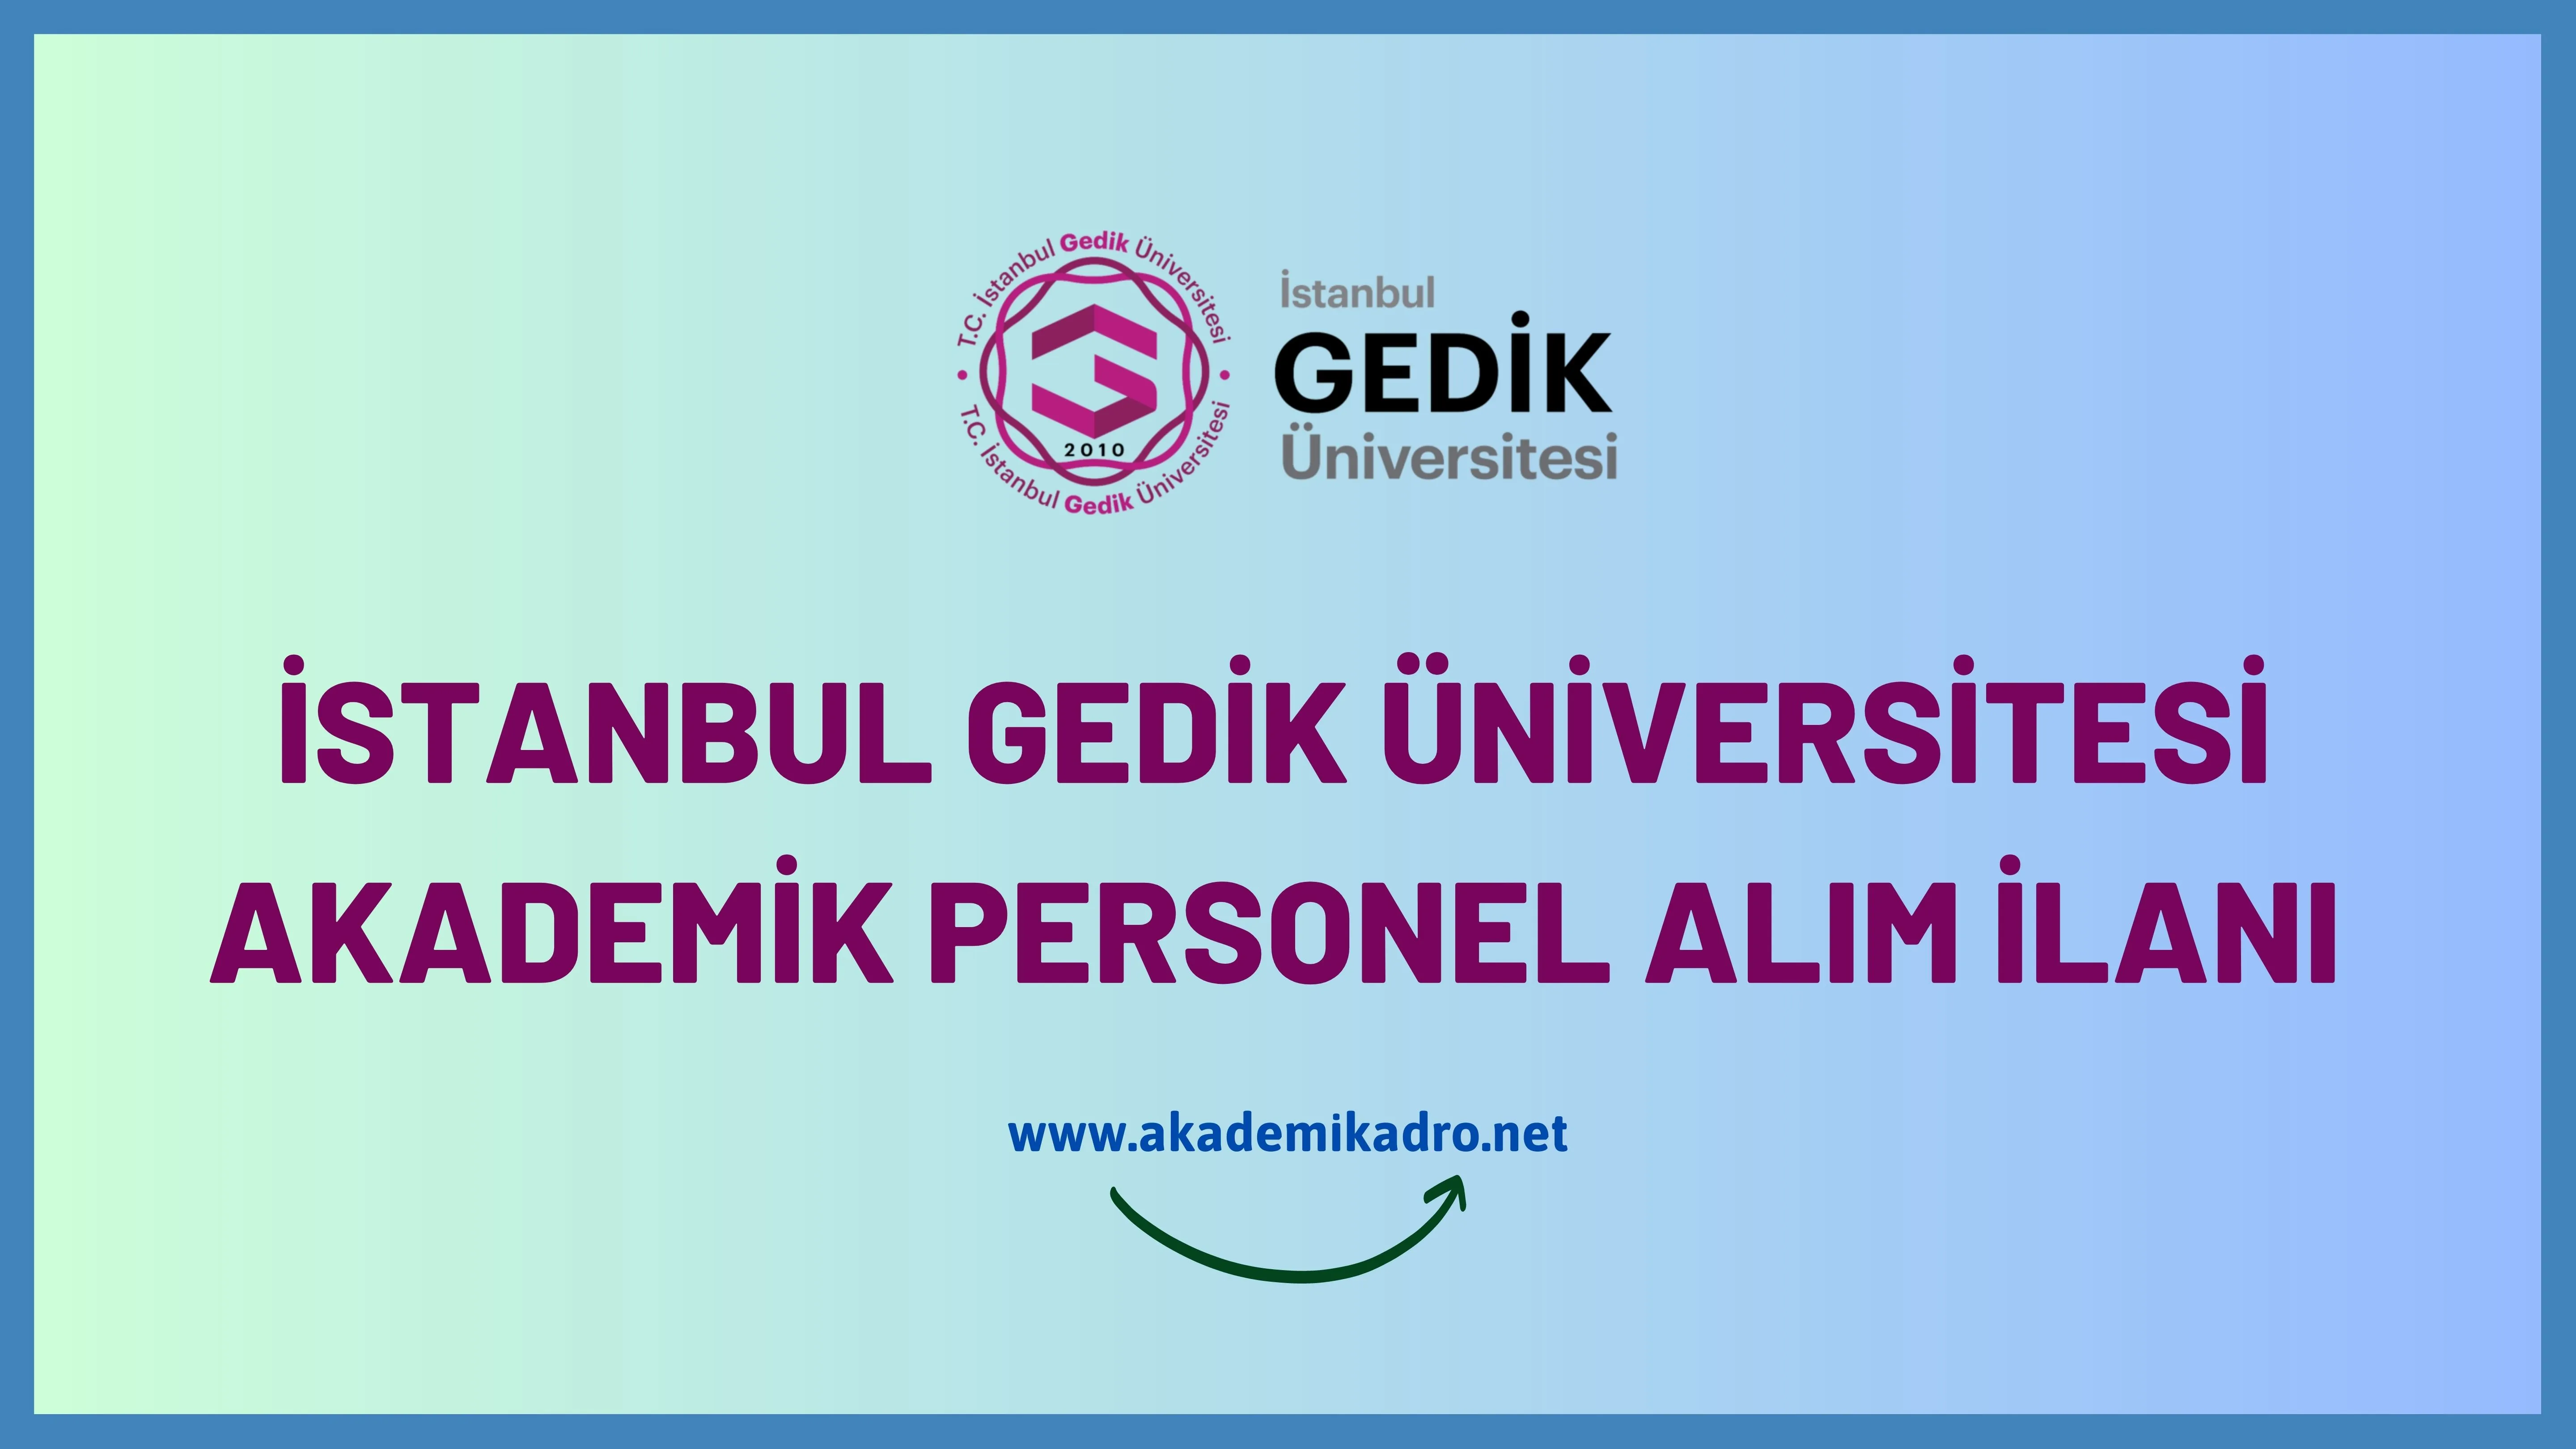 İstanbul Gedik Üniversitesi 6 akademik personel alacak.